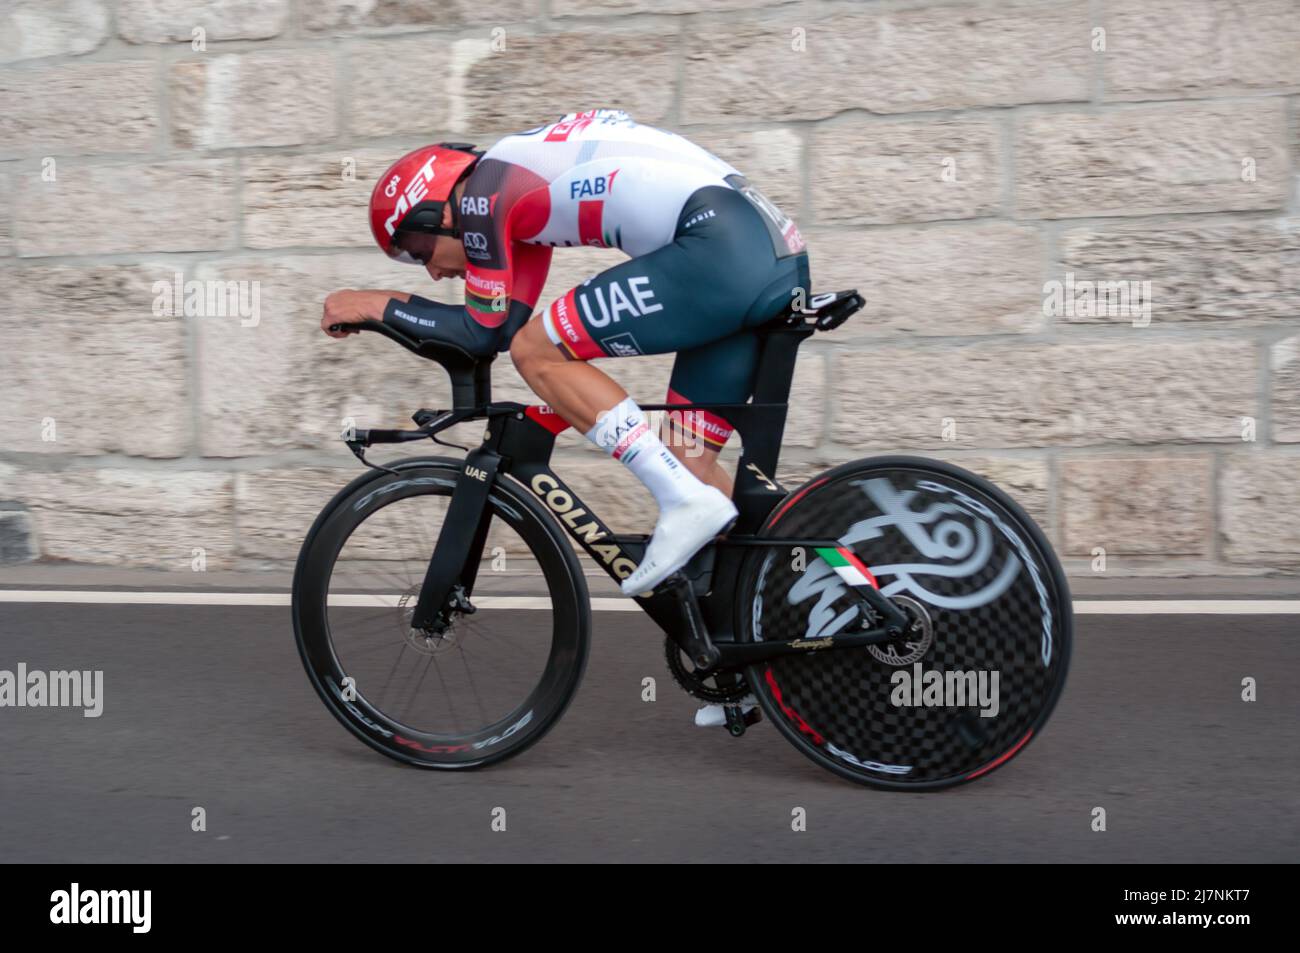 BUDAPEST, UNGARN - 07. MAI 2022: Radprofi Rui Costa UAE TEAM EMIRATES, Giro D'Italia Etappe 2 Zeitfahren - Radrennen am 07. Mai 2022 in B Stockfoto